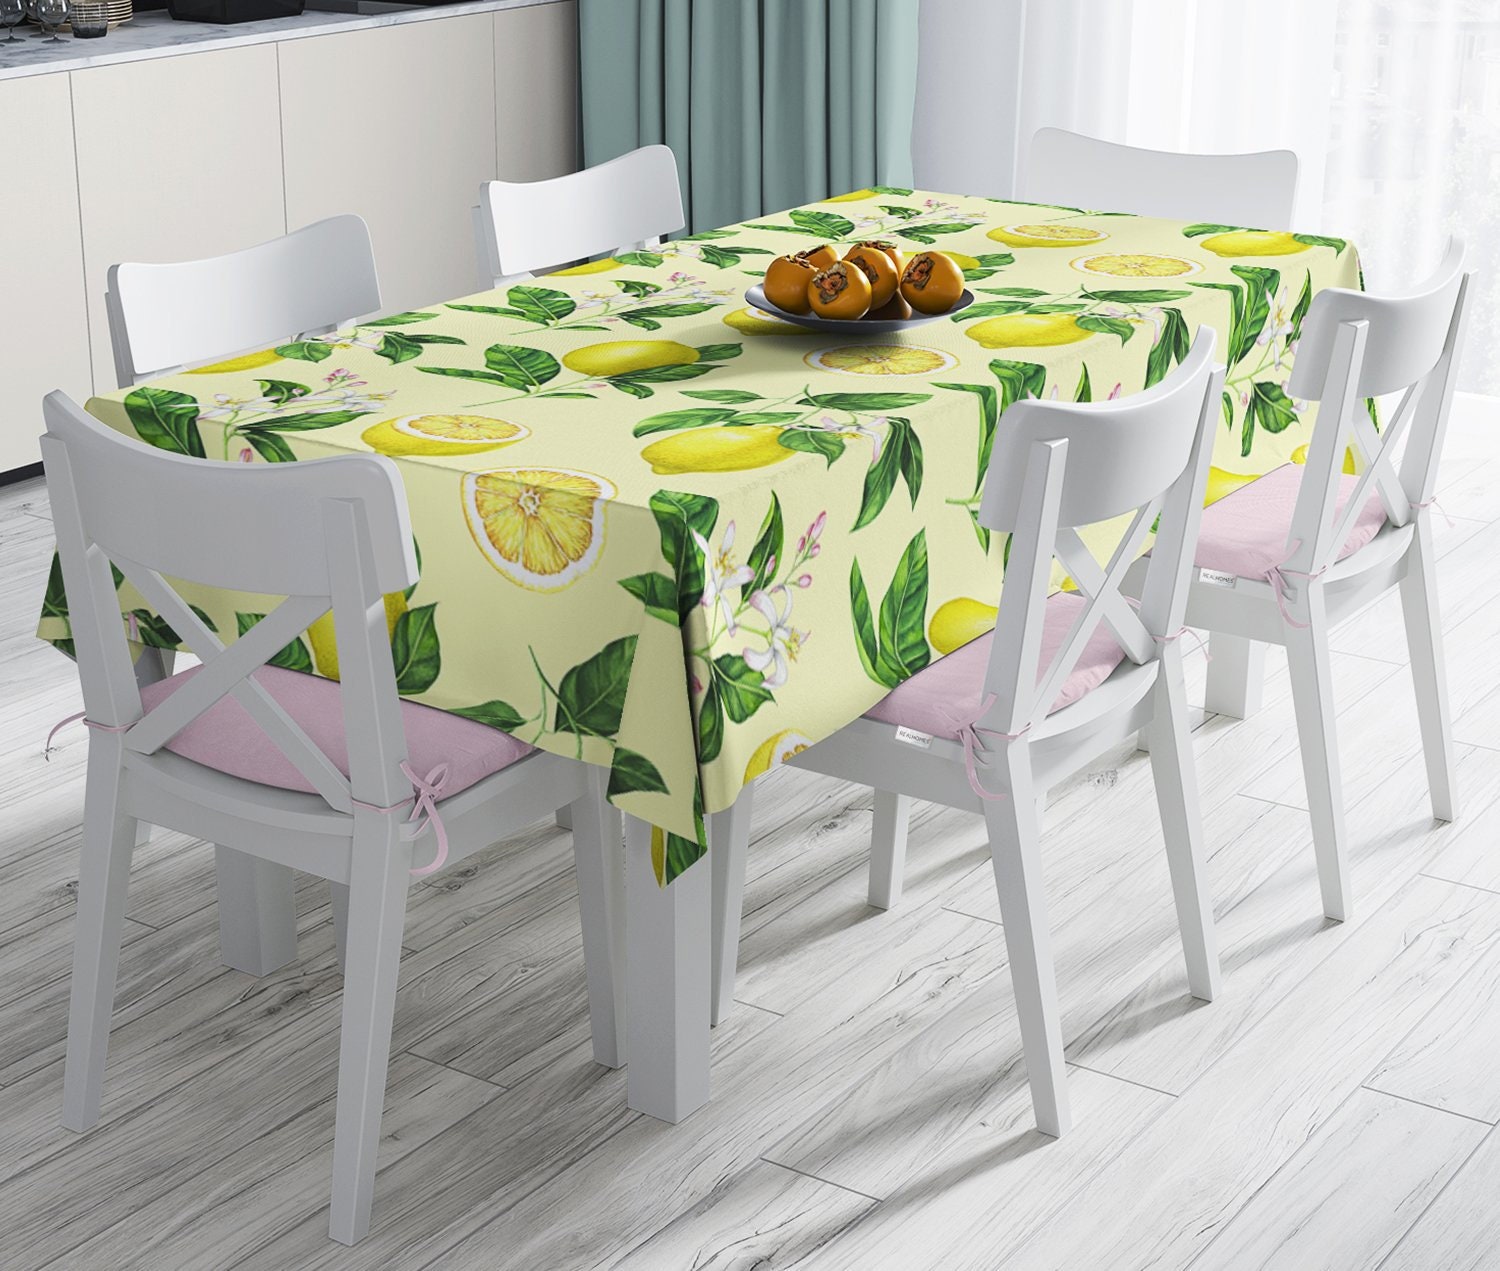 nappe imprimée à motifs de citron| nappe rectangulaire| couverture table| décor table cuisine| imprimée| personnalisée| cadeau la maison